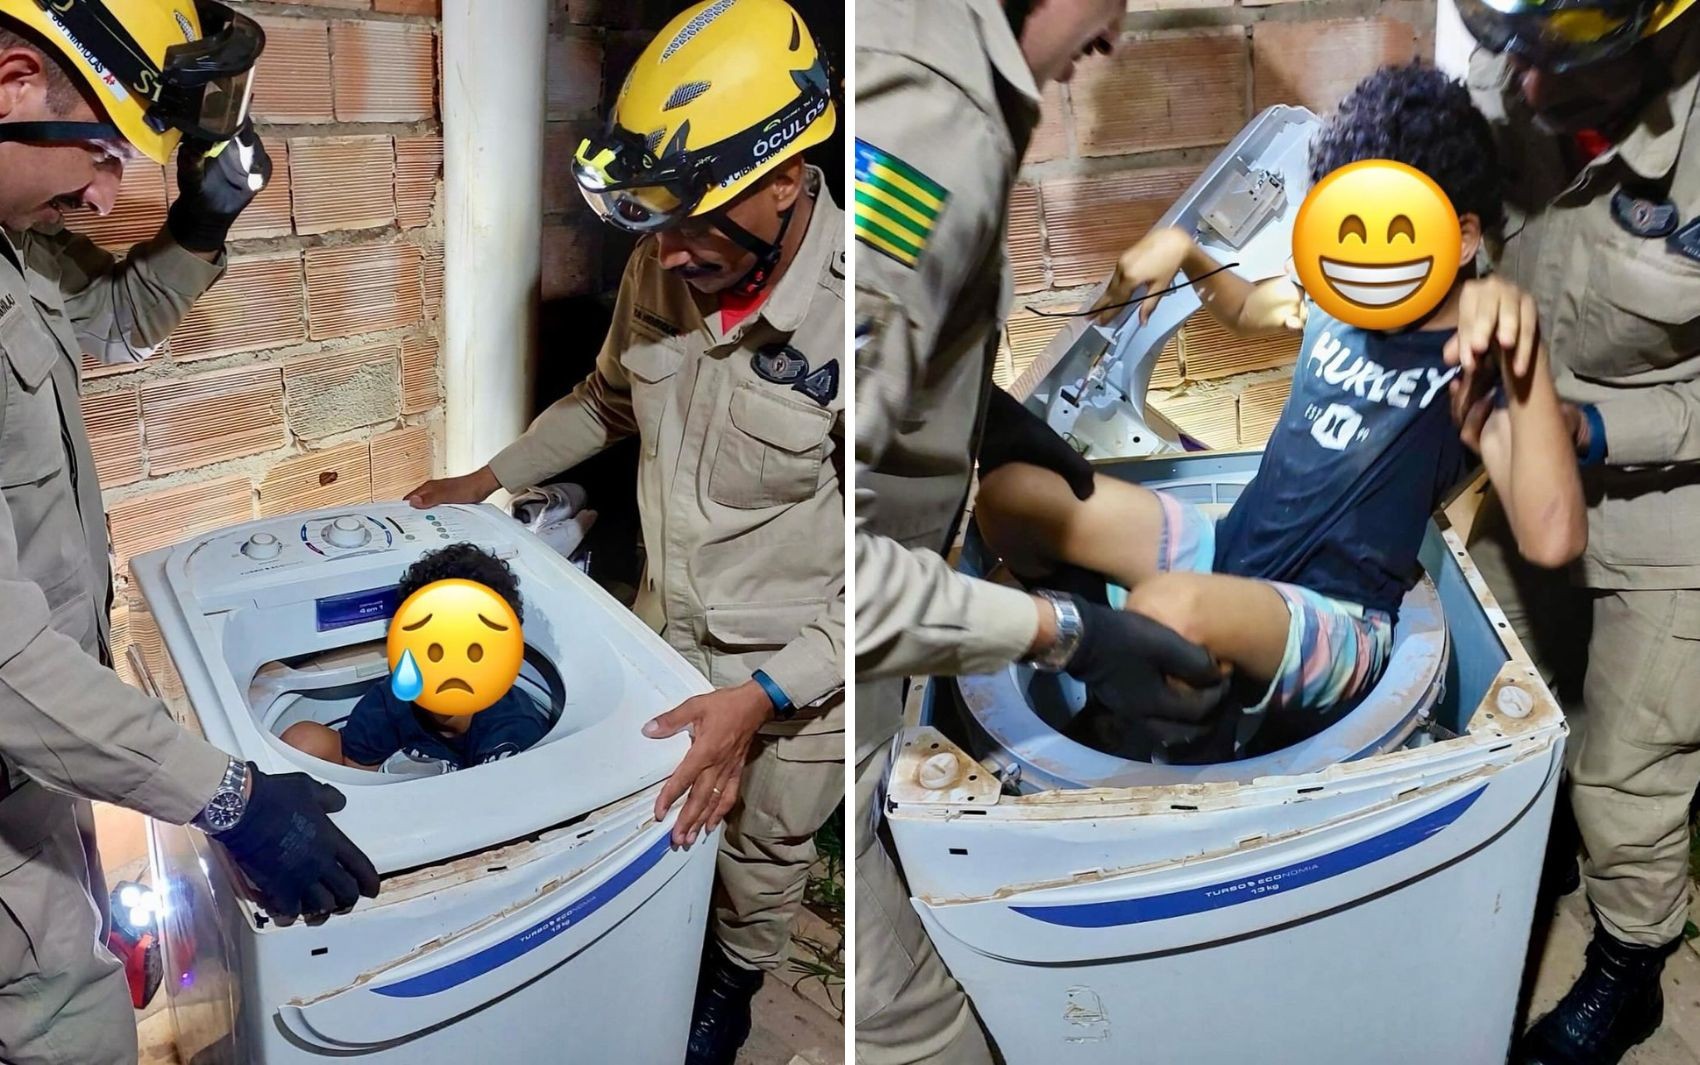 Menino é resgatado após ficar preso dentro de máquina de lavar enquanto brincava de pique-esconde